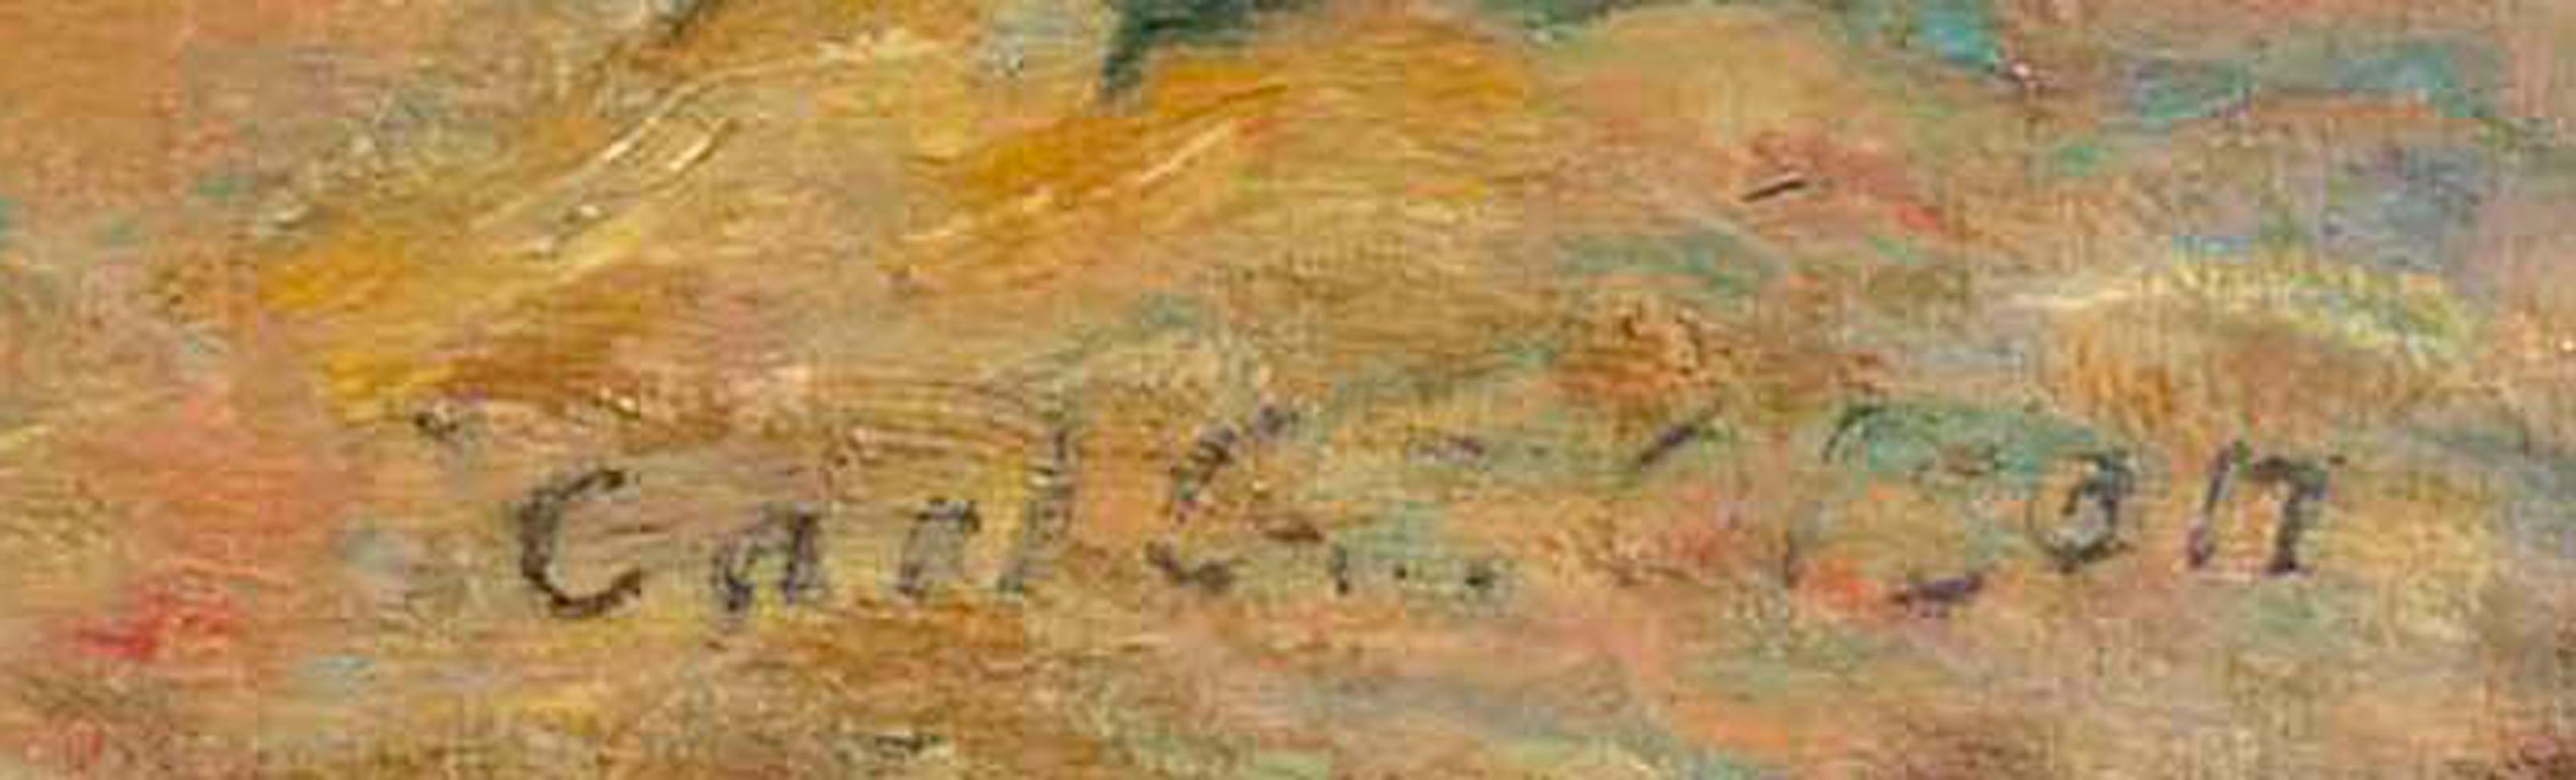 Woodland Gleam, a tonalist landscape by Carl Gustaf Theodore Olson (1875-1952) For Sale 1